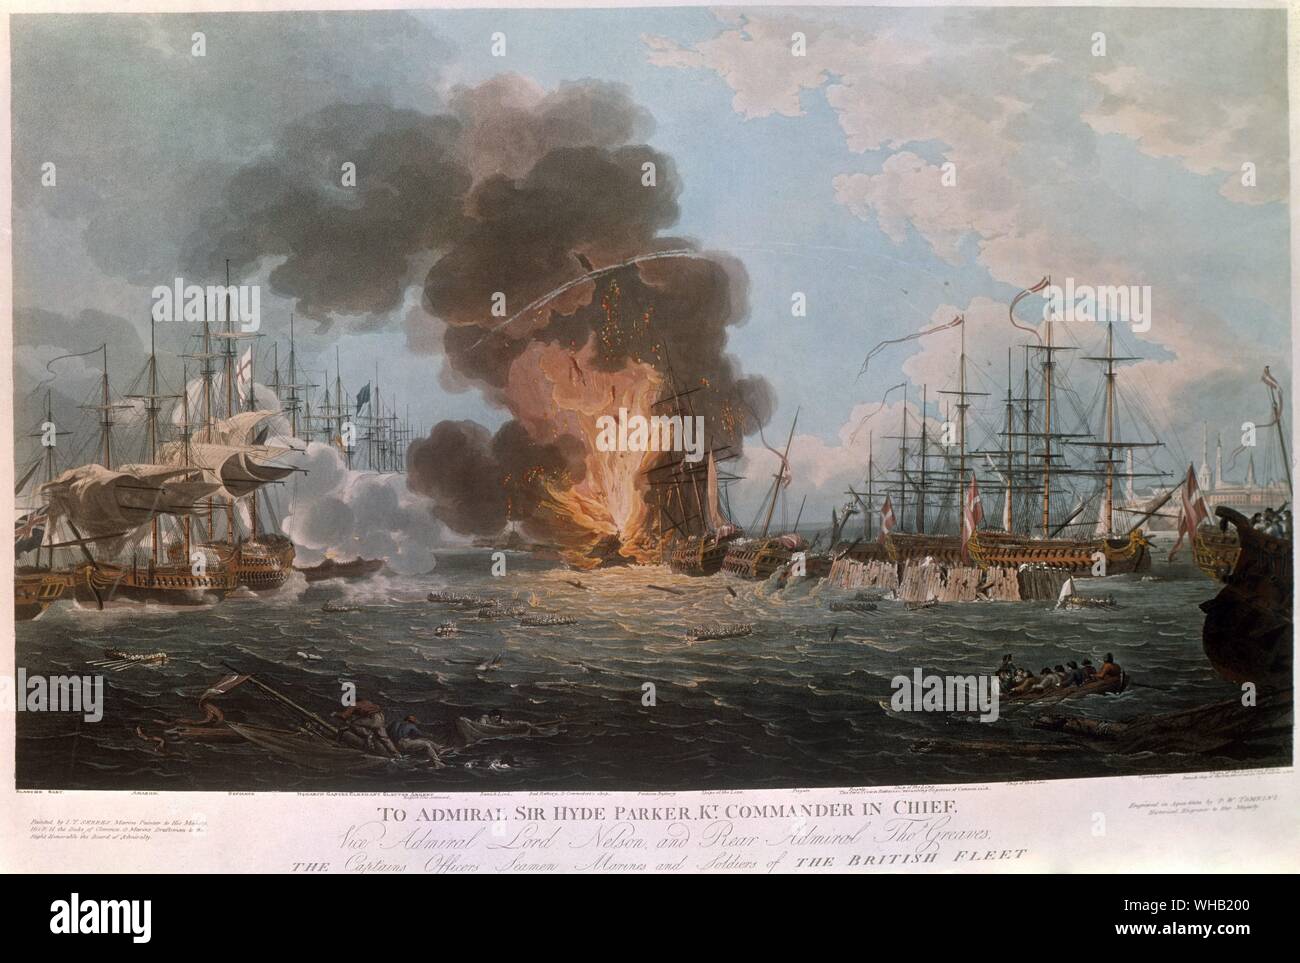 À l'amiral Hyde Parker - Commandant en chef. Bataille de Copenhague. Une aquatinte montrant la destruction finale de la flotte Danoise. Banque D'Images